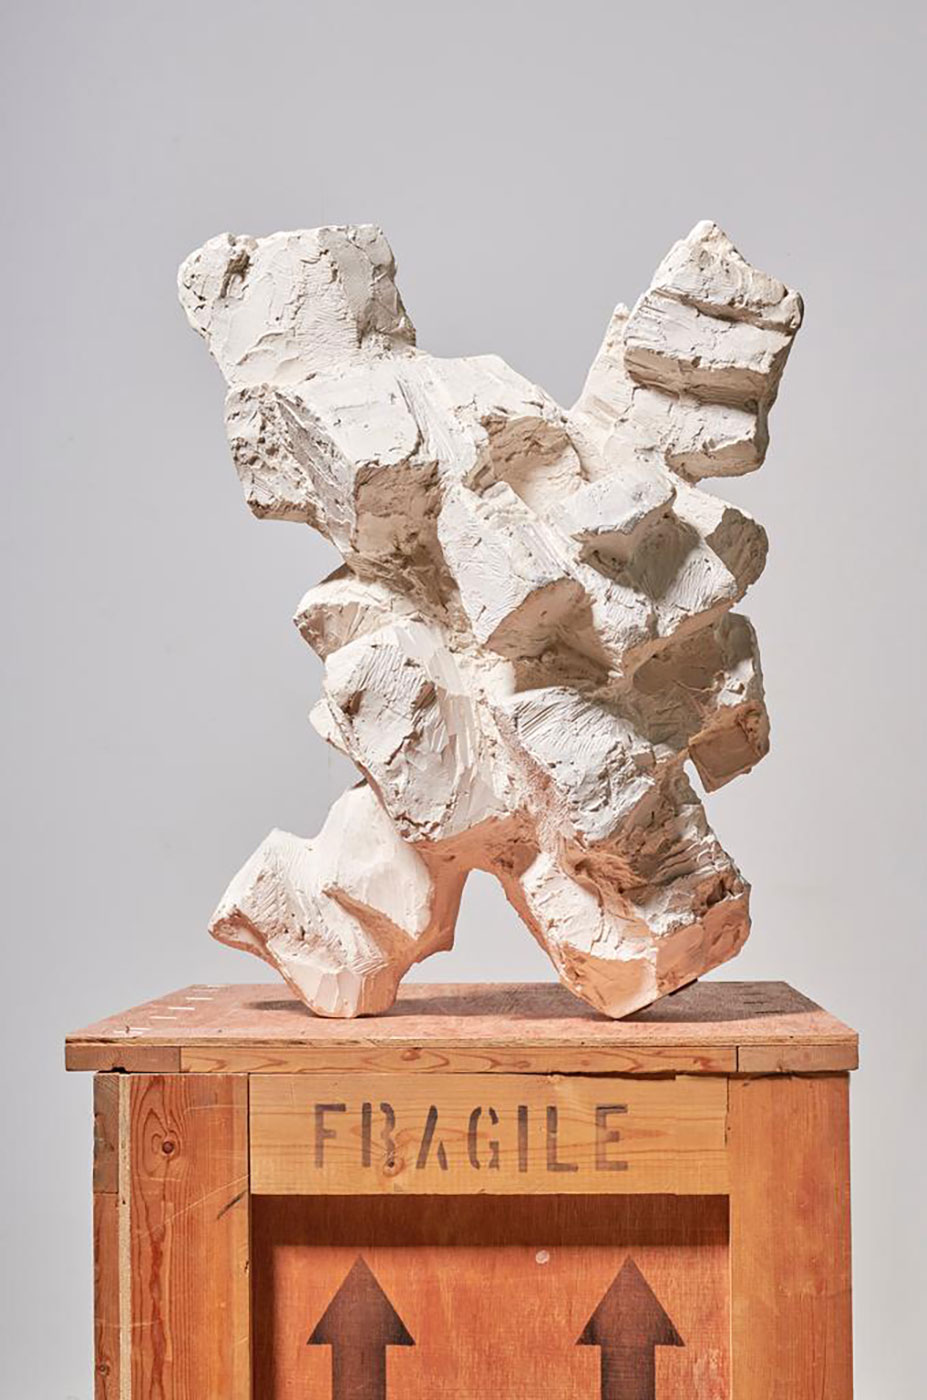 André bloc, sculpture